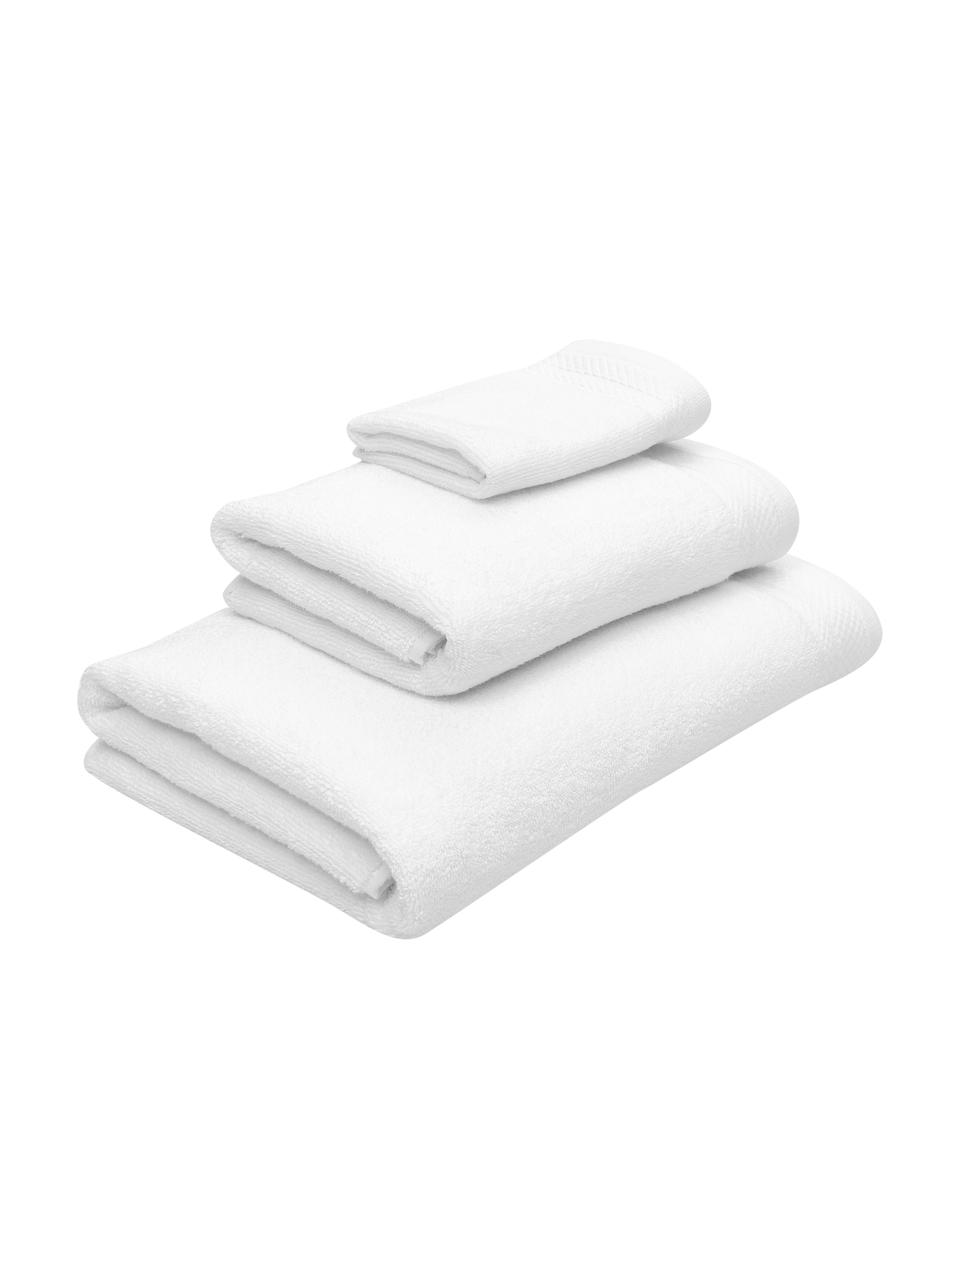 Set 3 asciugamani in cotone organico Premium, 100% cotone organico certificato GOTS (da GCL International, GCL-300517).
Qualità pesante, 600 g/m², Bianco, Set in varie misure